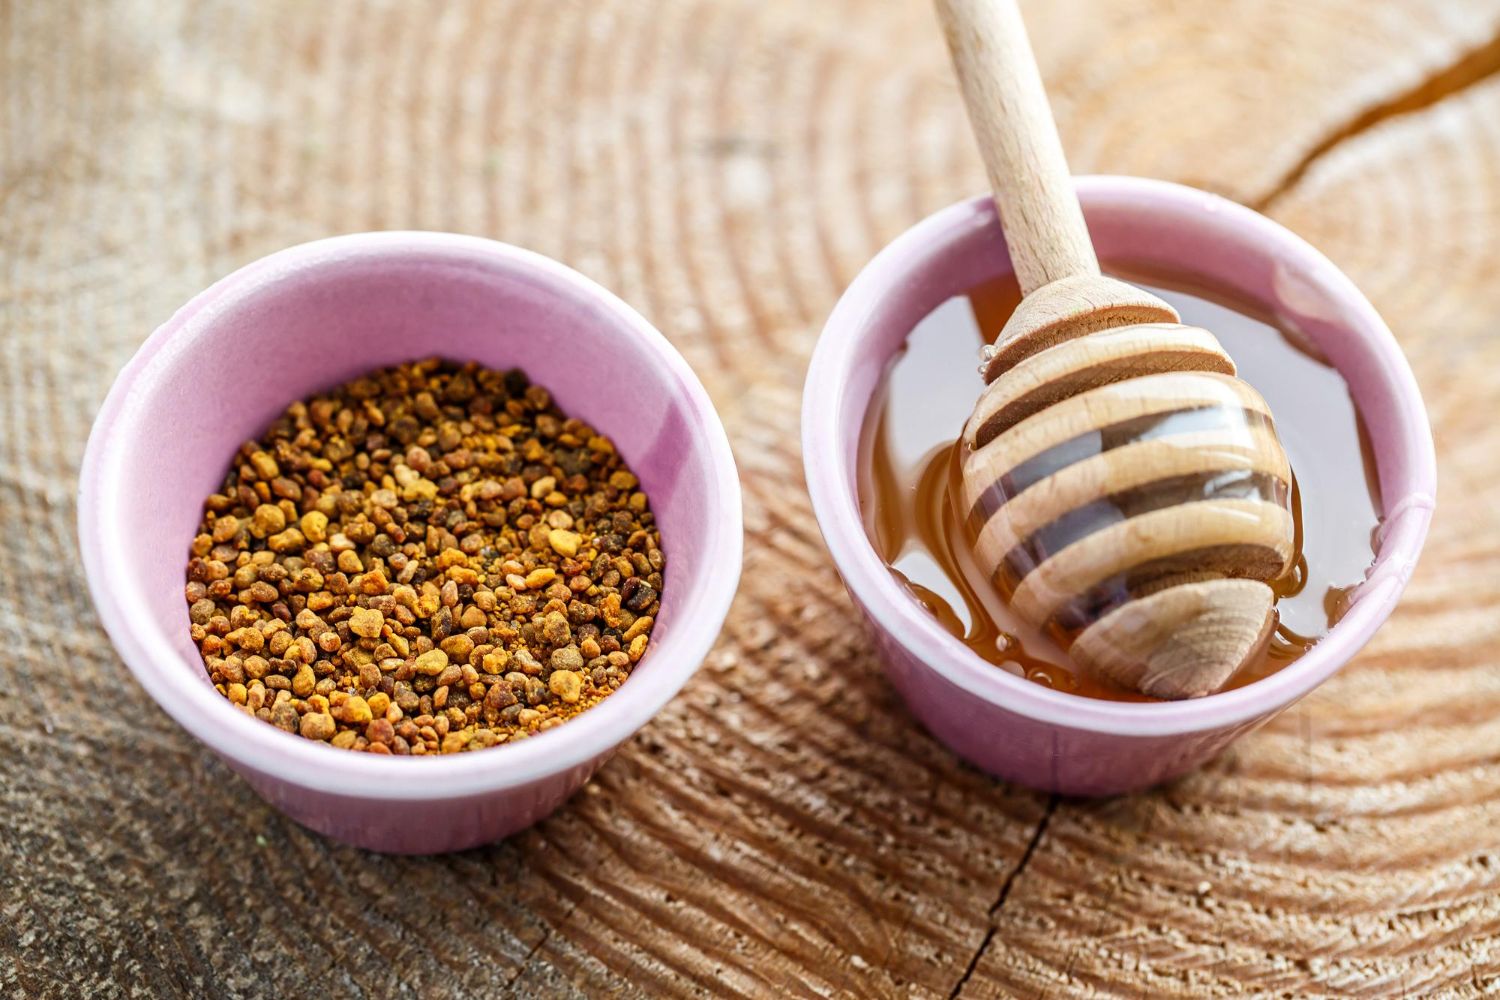 Pyłek pszczeli - właściwości i zastosowanie. Kto może jeść pyłek pszczeli?